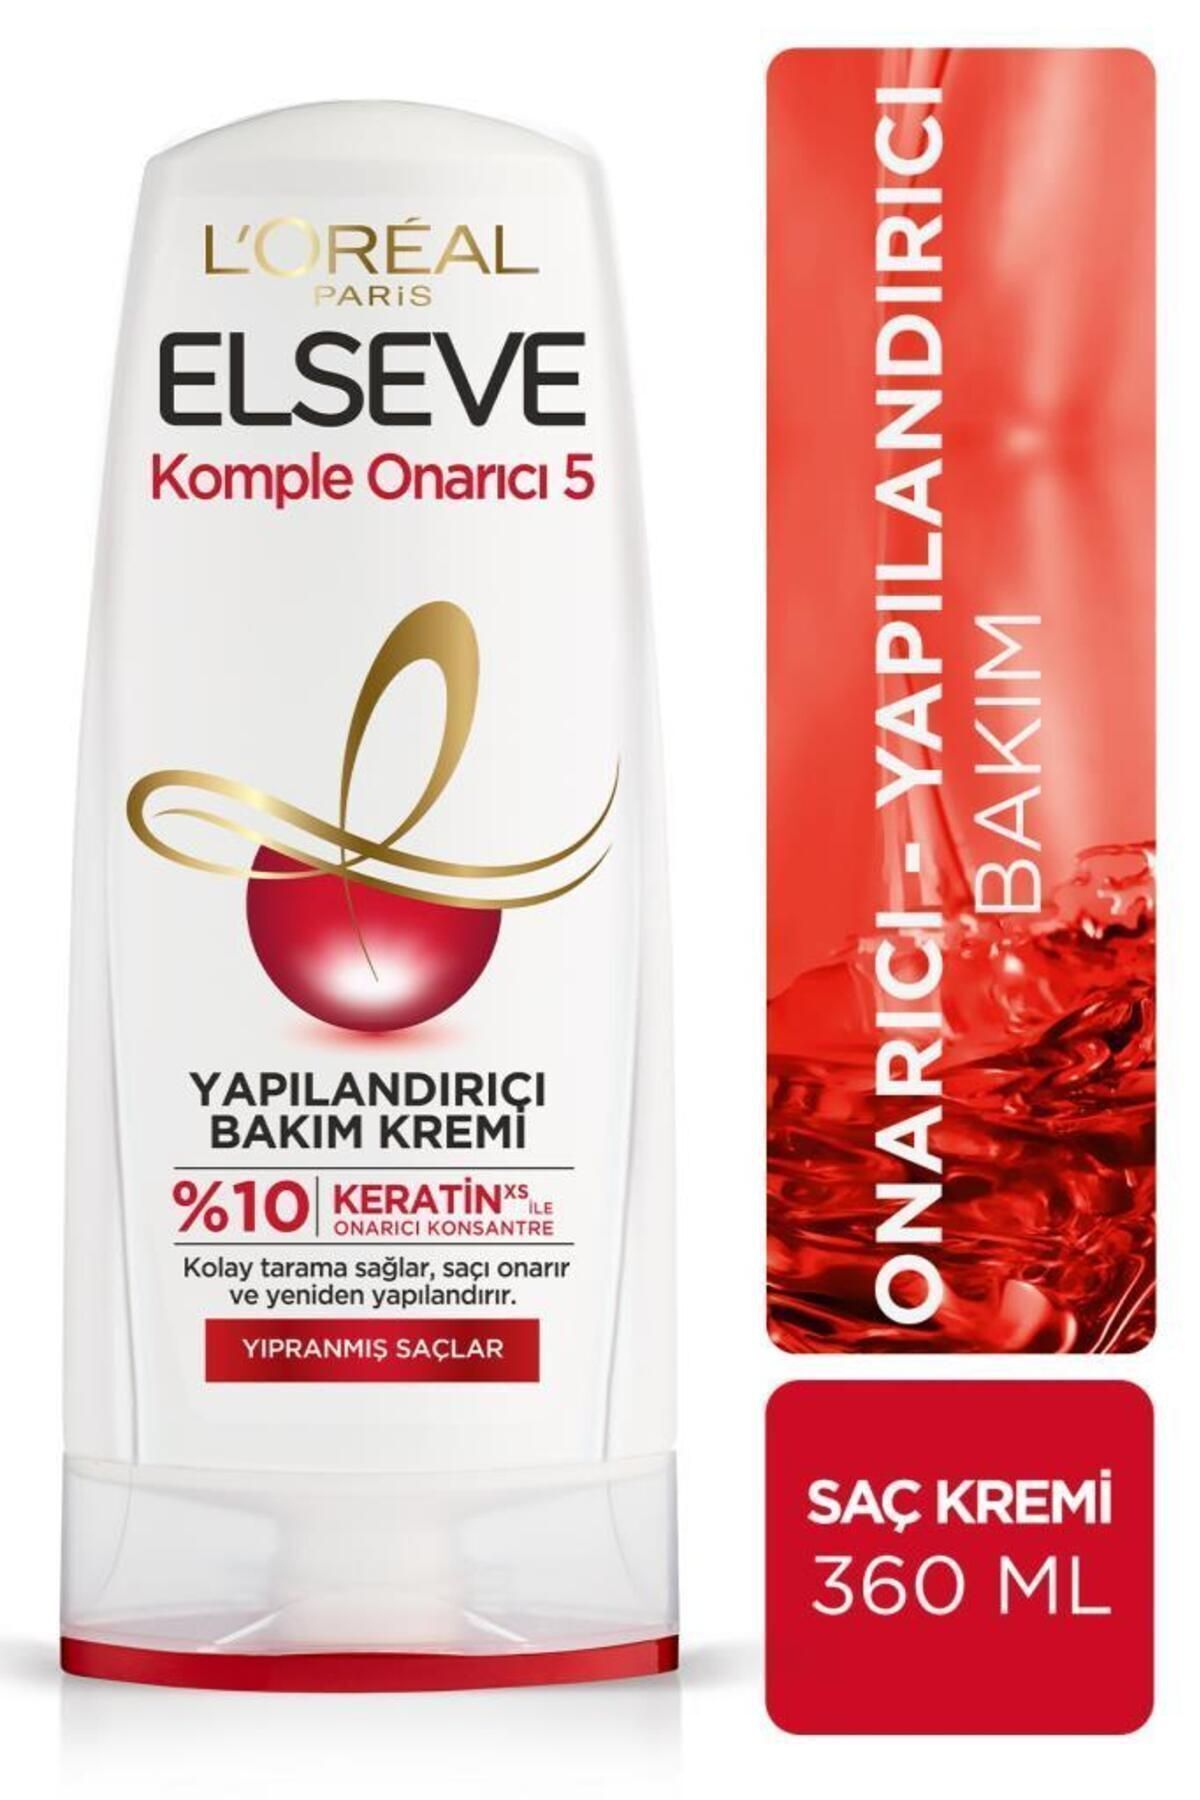 Elseve L'oréal Paris Komple Onarıcı 5 Yapılandırıcı Bakım Kremi 360 ml